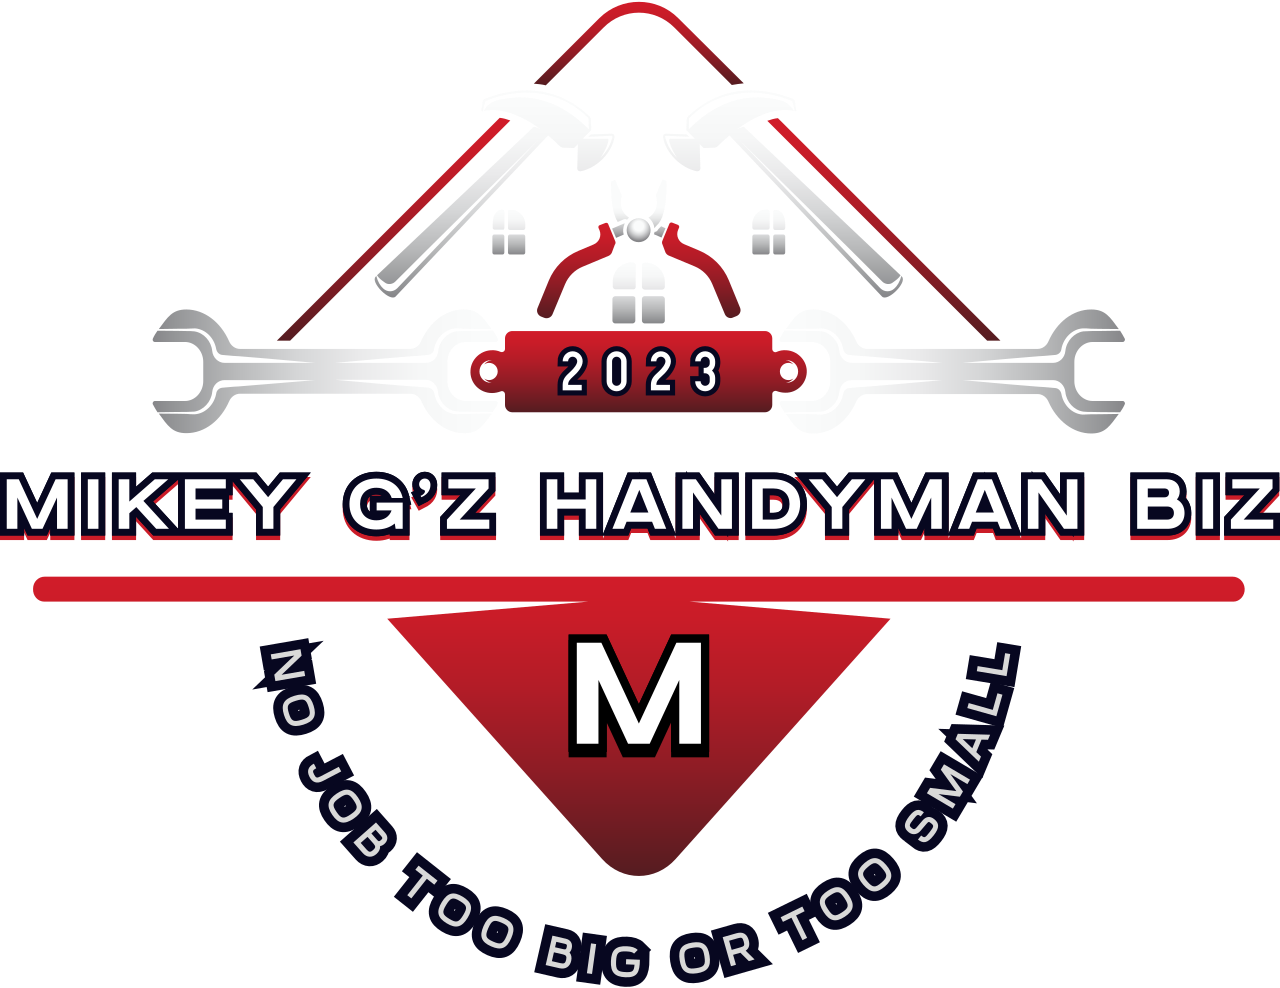 Mikey G'z Handyman Biz's logo